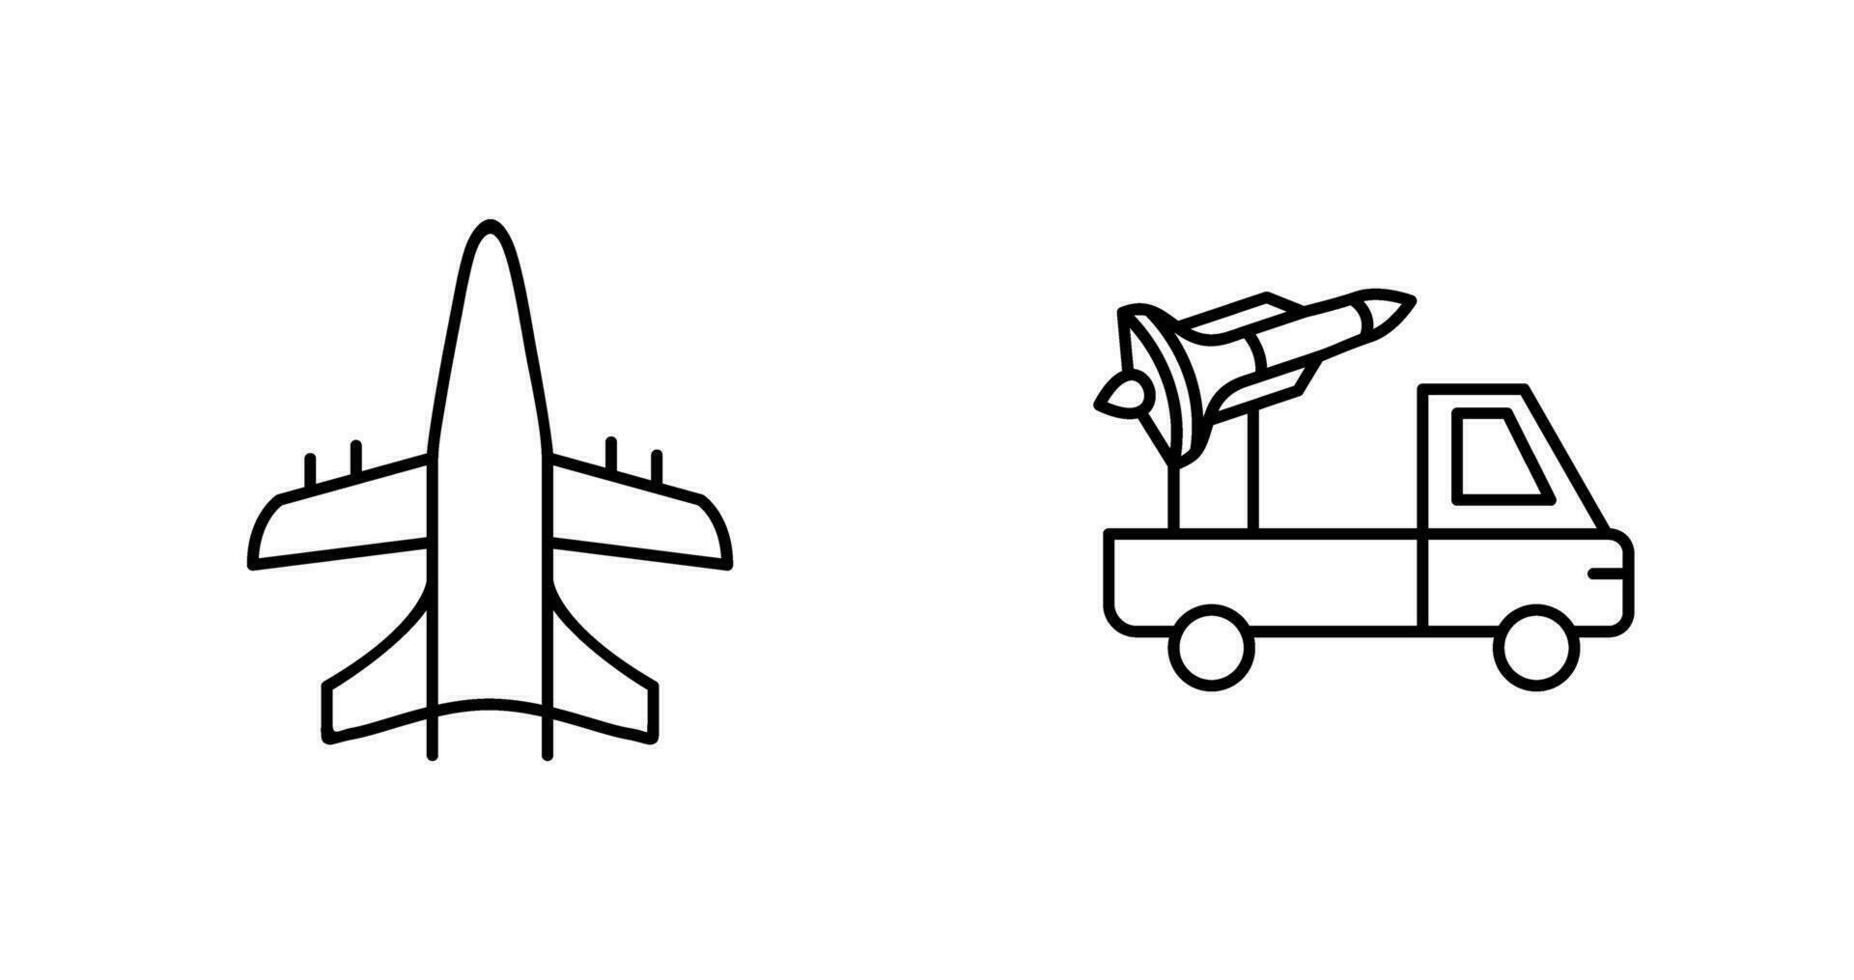 Militär- Flugzeug und Rakete Symbol vektor